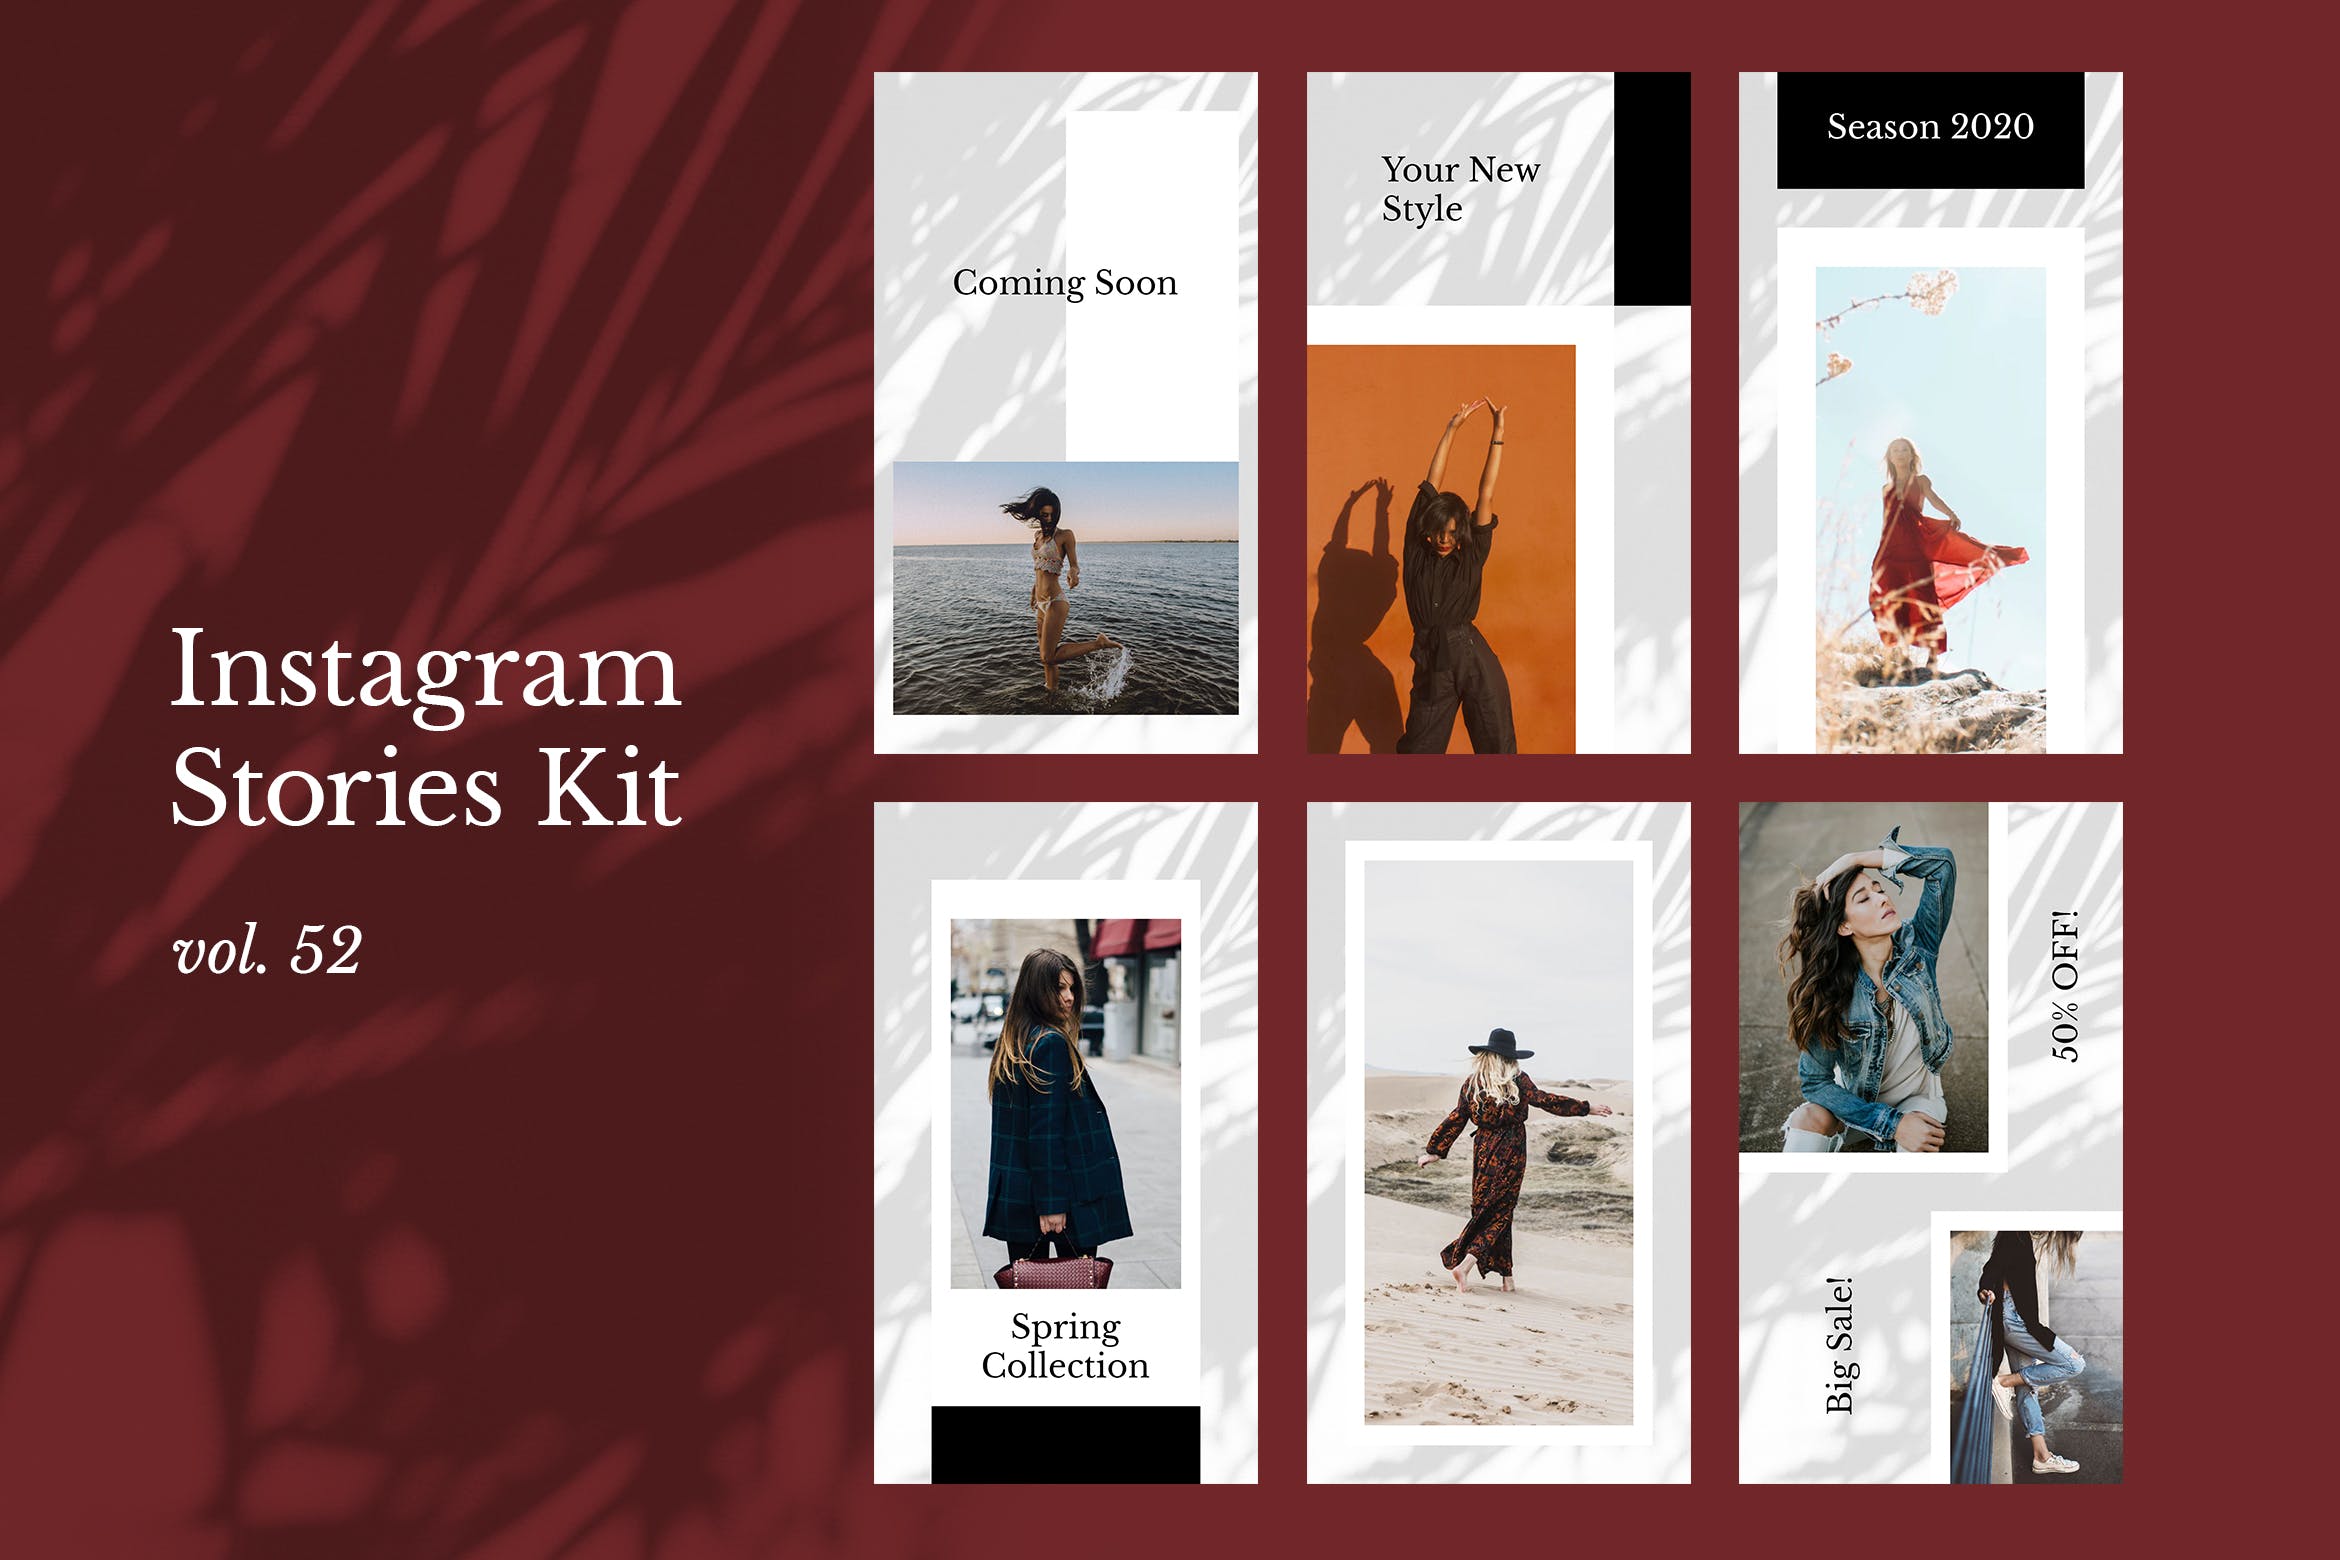 时装品牌产品展示Instagram社交贴图设计模板蚂蚁素材精选v52 Instagram Stories Kit (Vol.52)插图